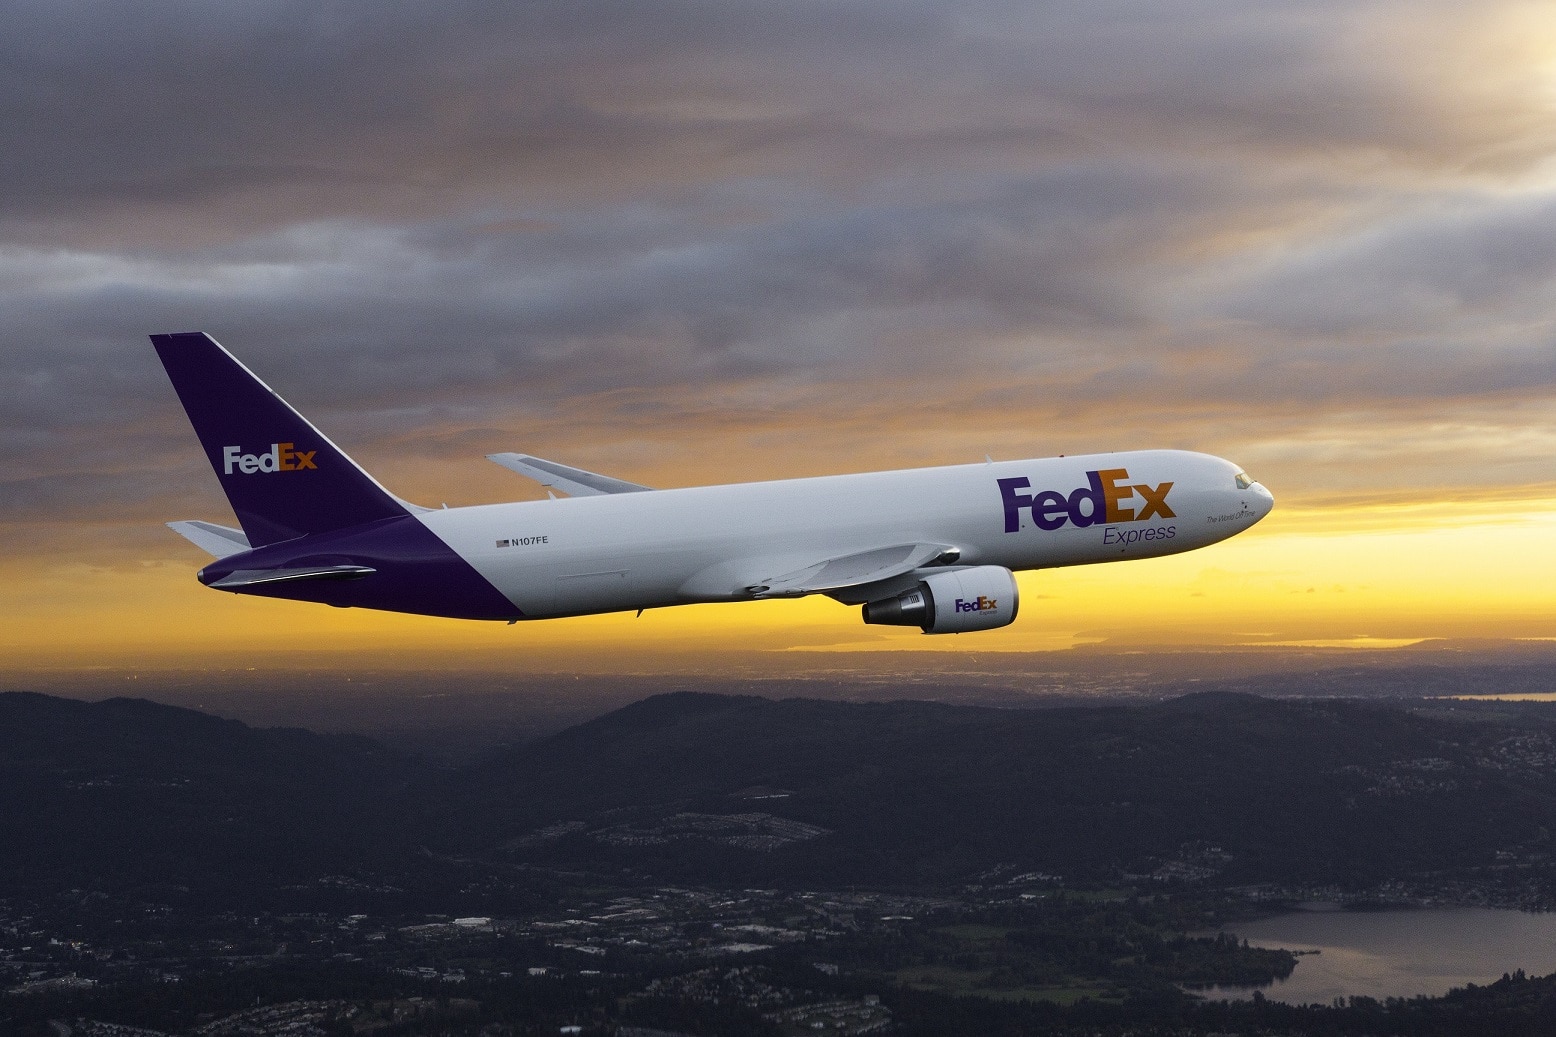 เฟดเอ็กซ์ เอ็กซ์เพรส (FedEx Express) ยกระดับความท้าทายด้านการดูแลสุขภาพ